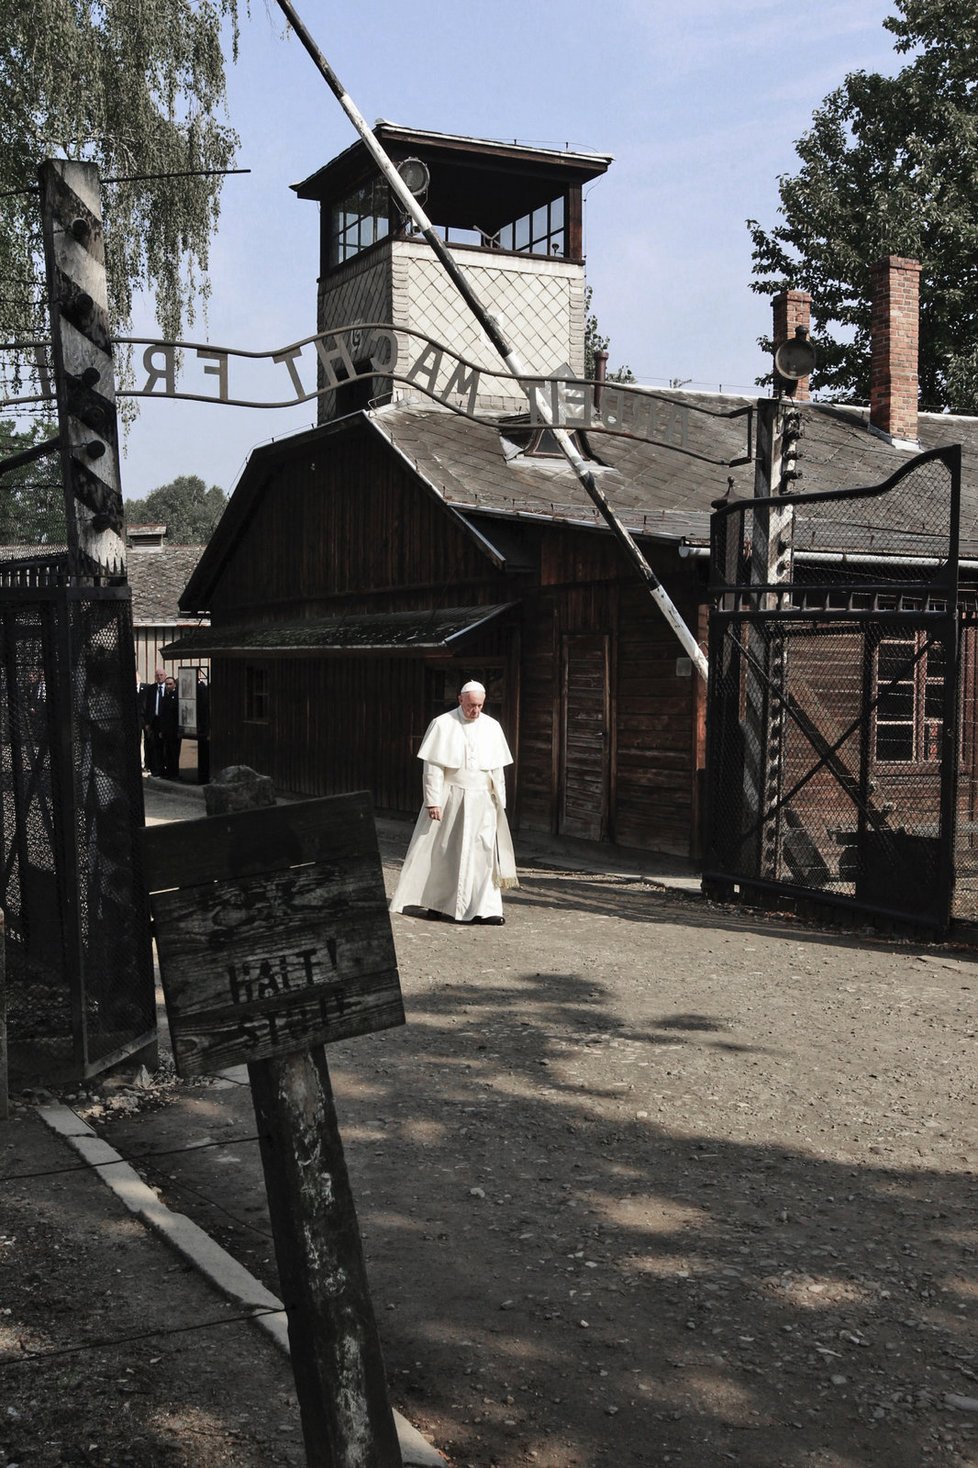 Papež v koncentračním táboře: František navštívil Osvětim v roce 2016.